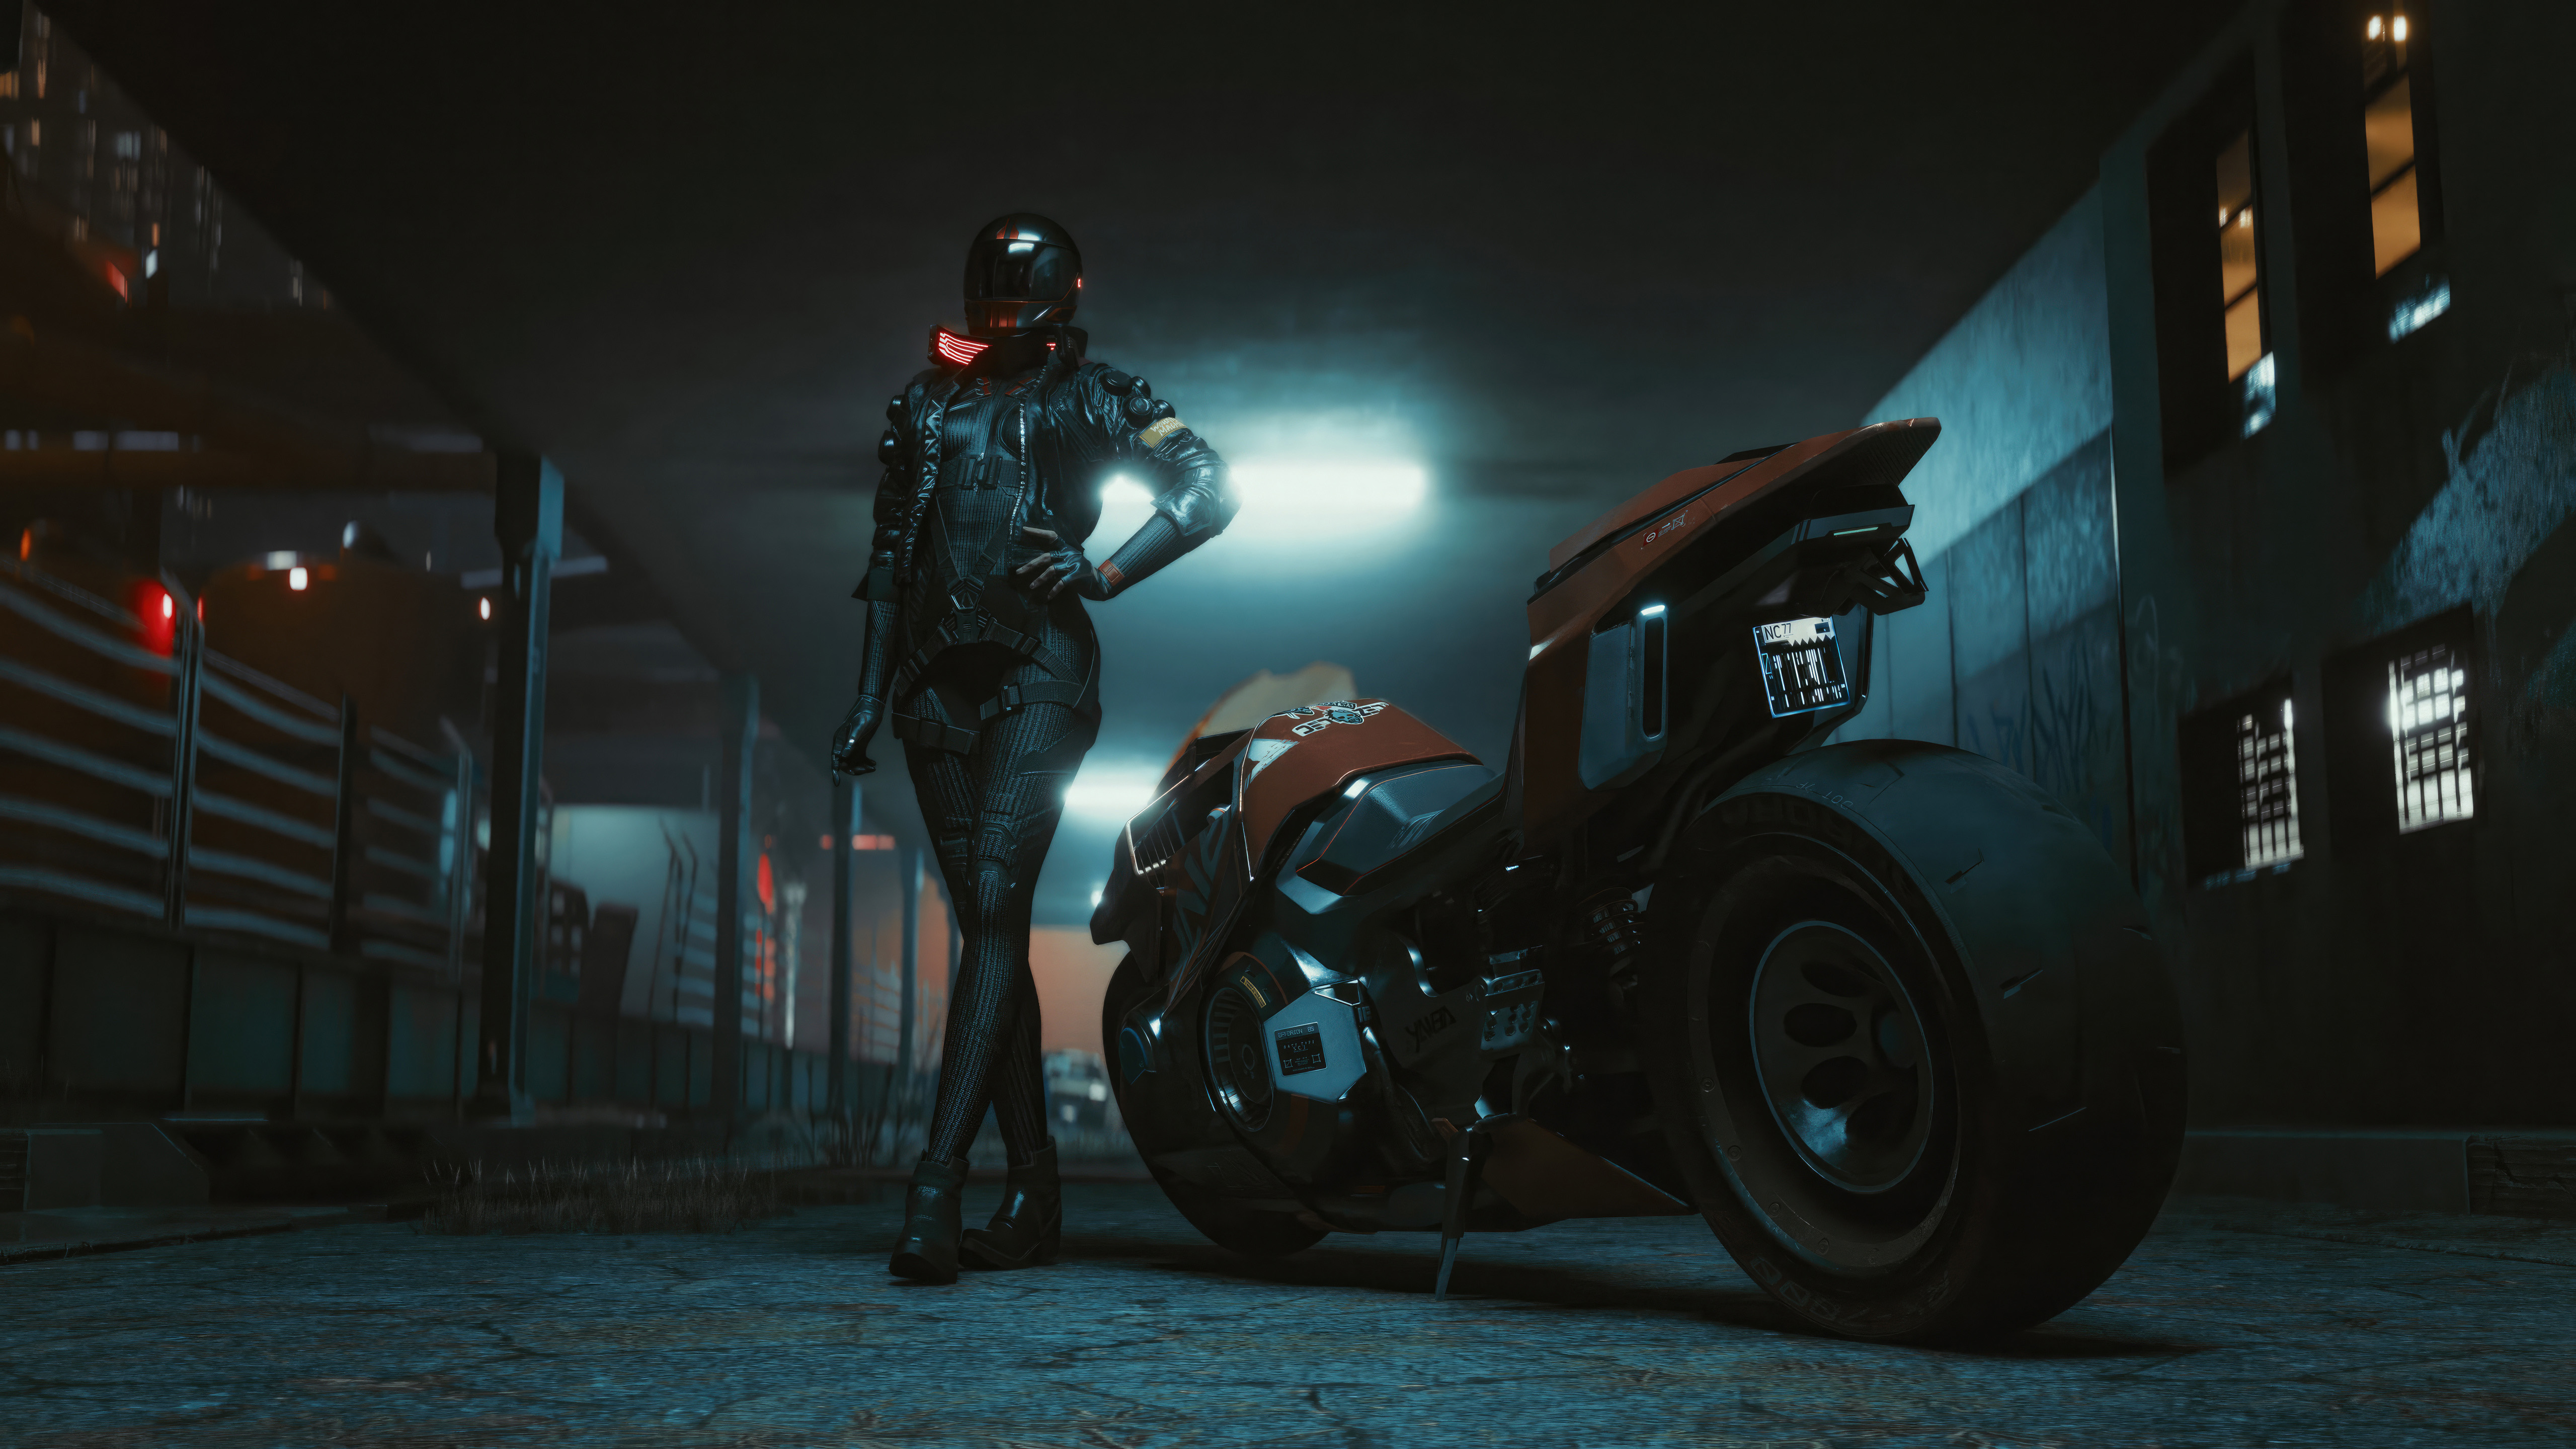 Fondos de pantalla Cyberpunk 2077 Motorcycle Girl